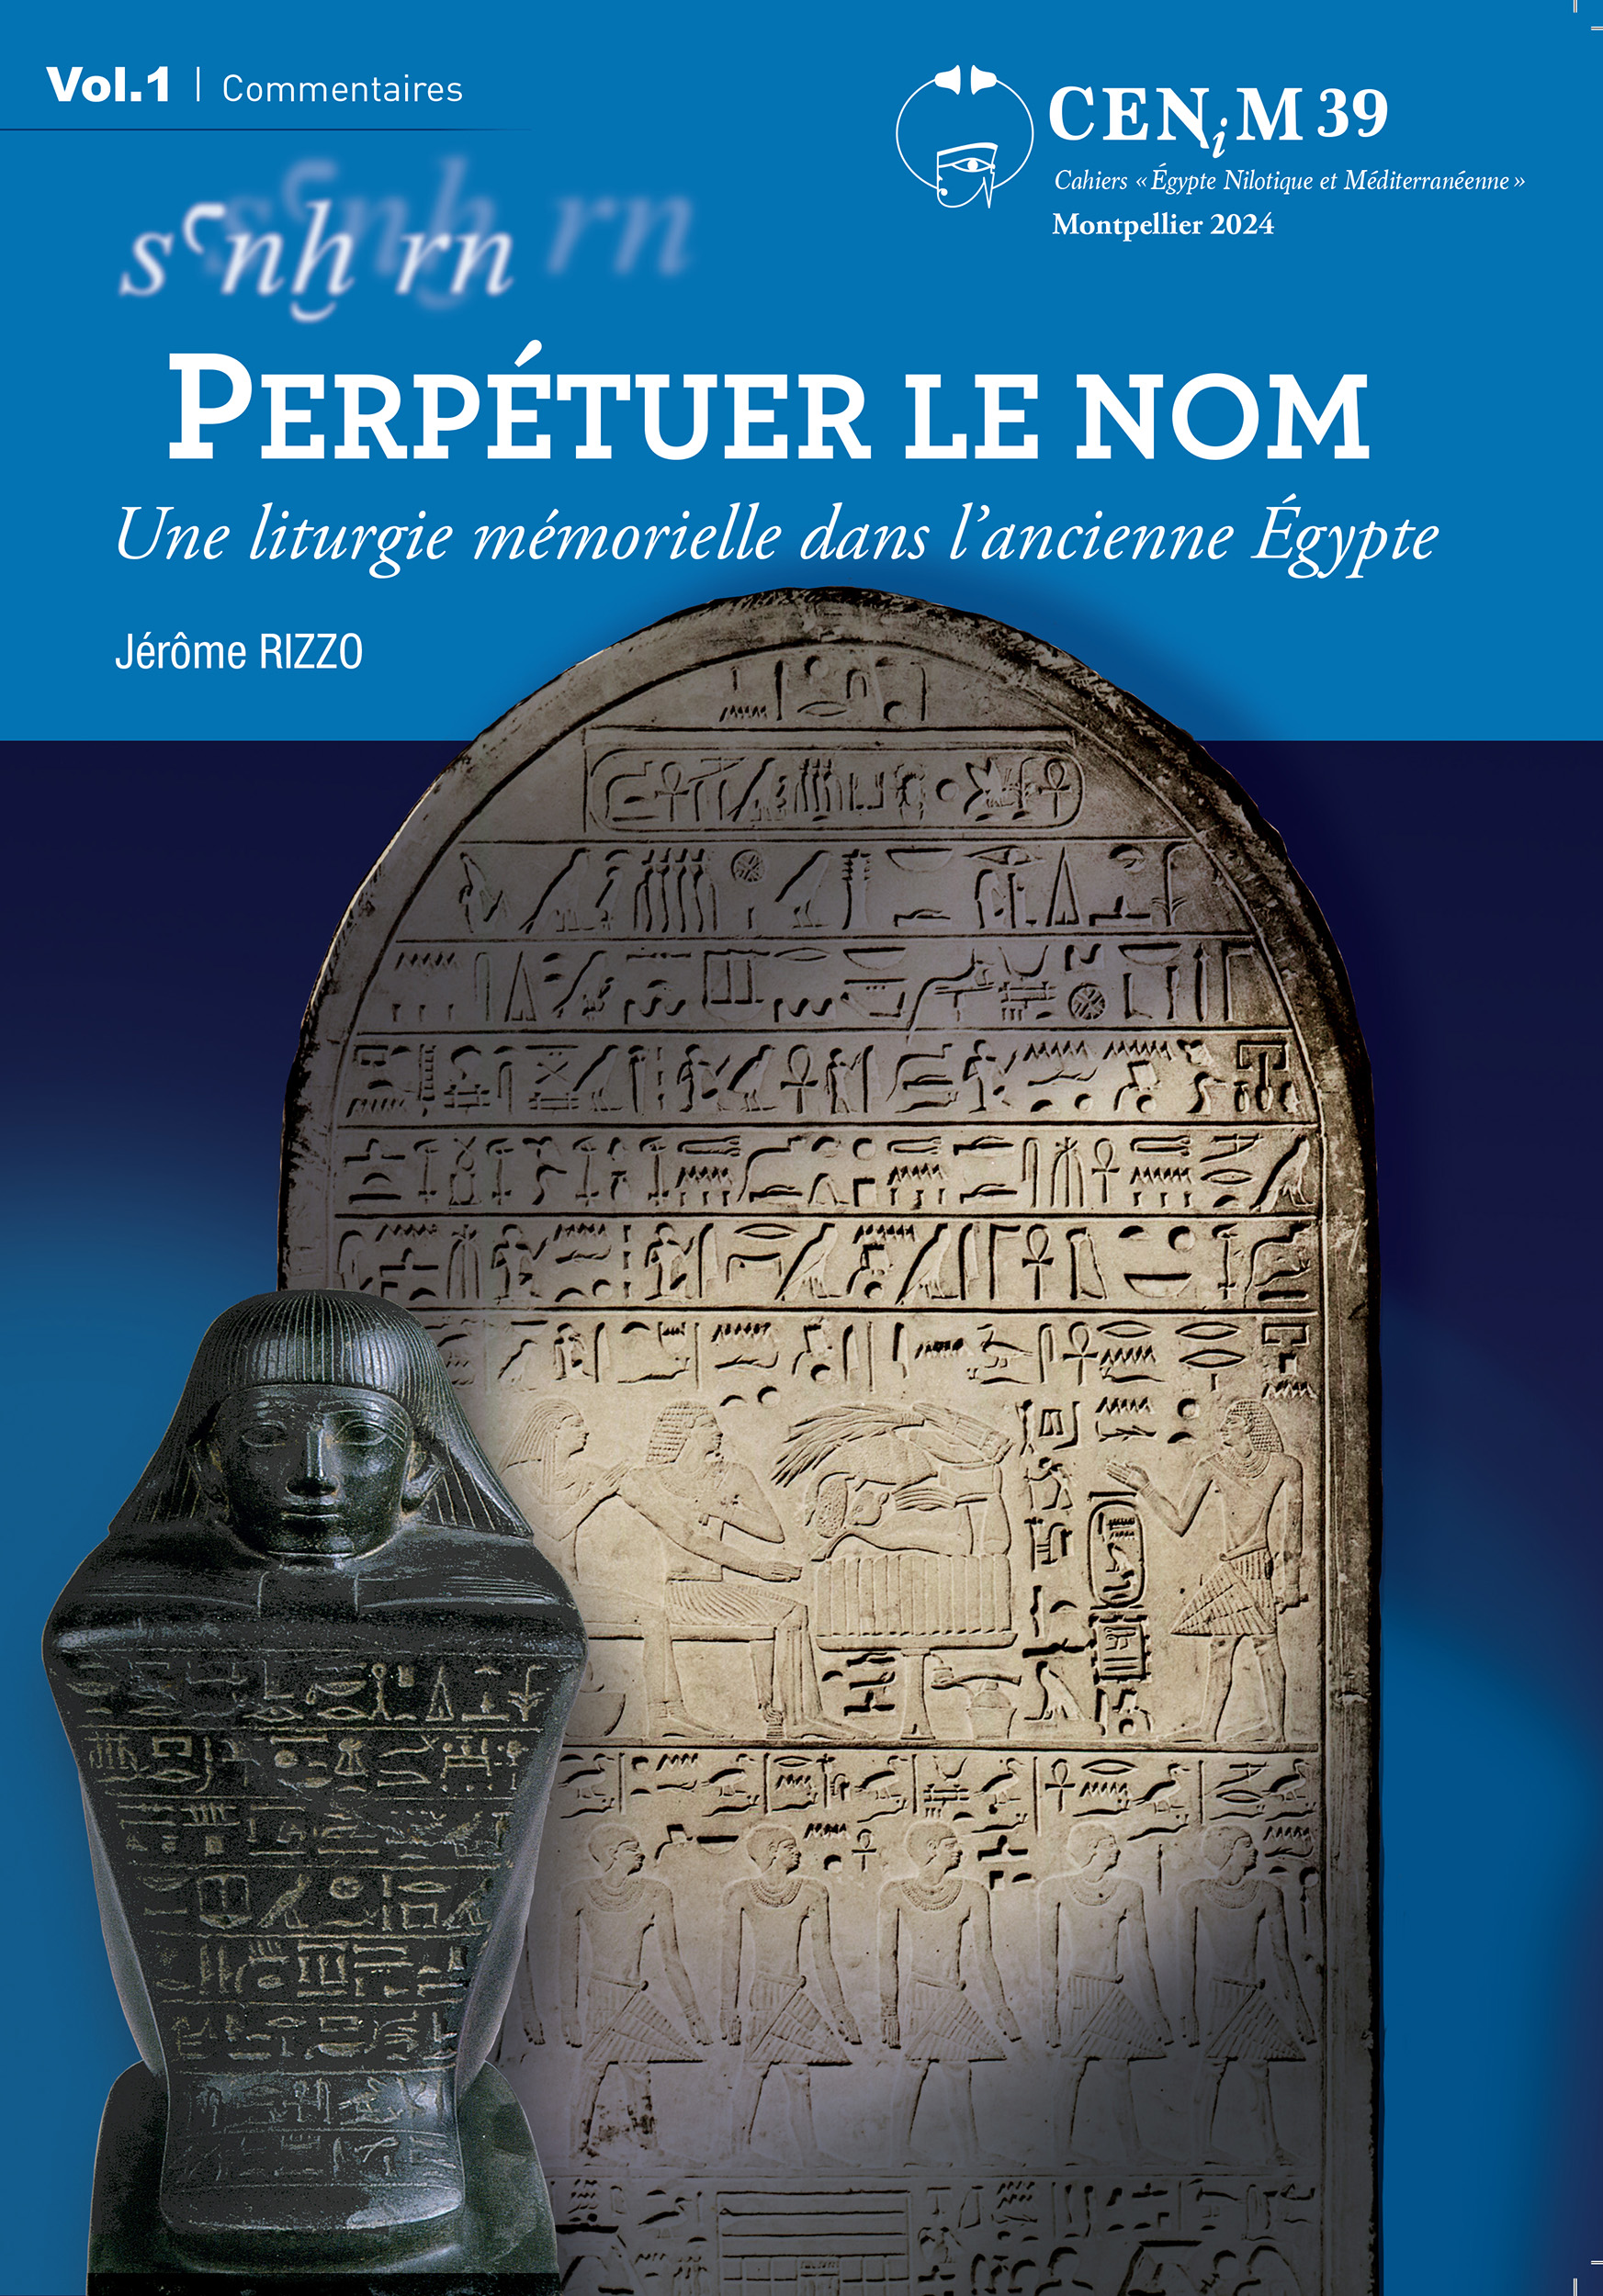 Jérôme Rizzo,  « Perpétuer le nom » (sanx rn)
Une liturgie mémorielle dans l’ancienne Égypte (3. vols) 